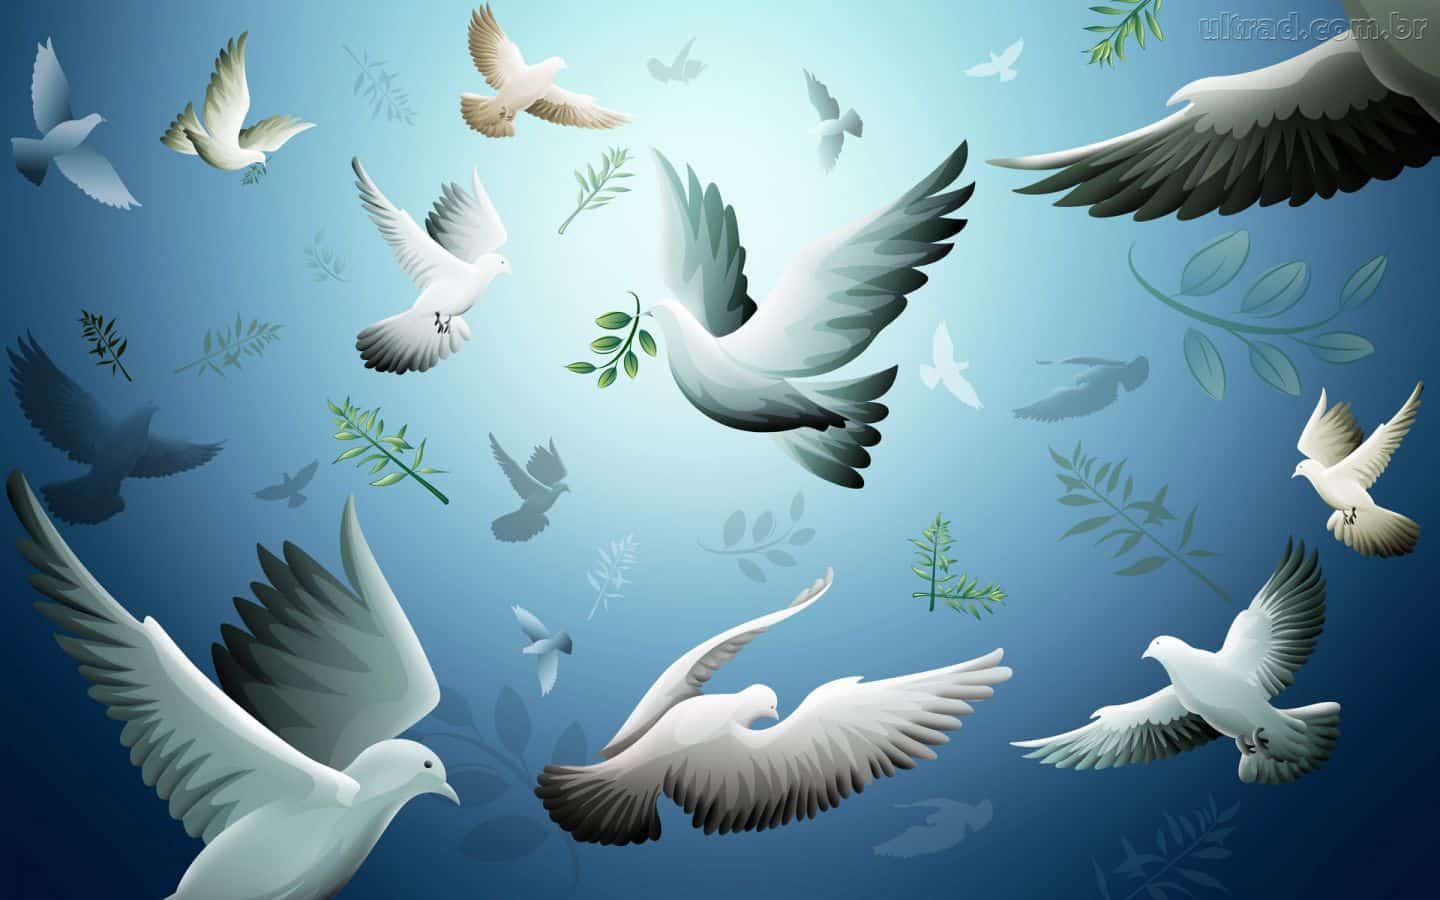 Dia Mundial da Paz - Contexto histórico, origem, cerimônia e curiosidades